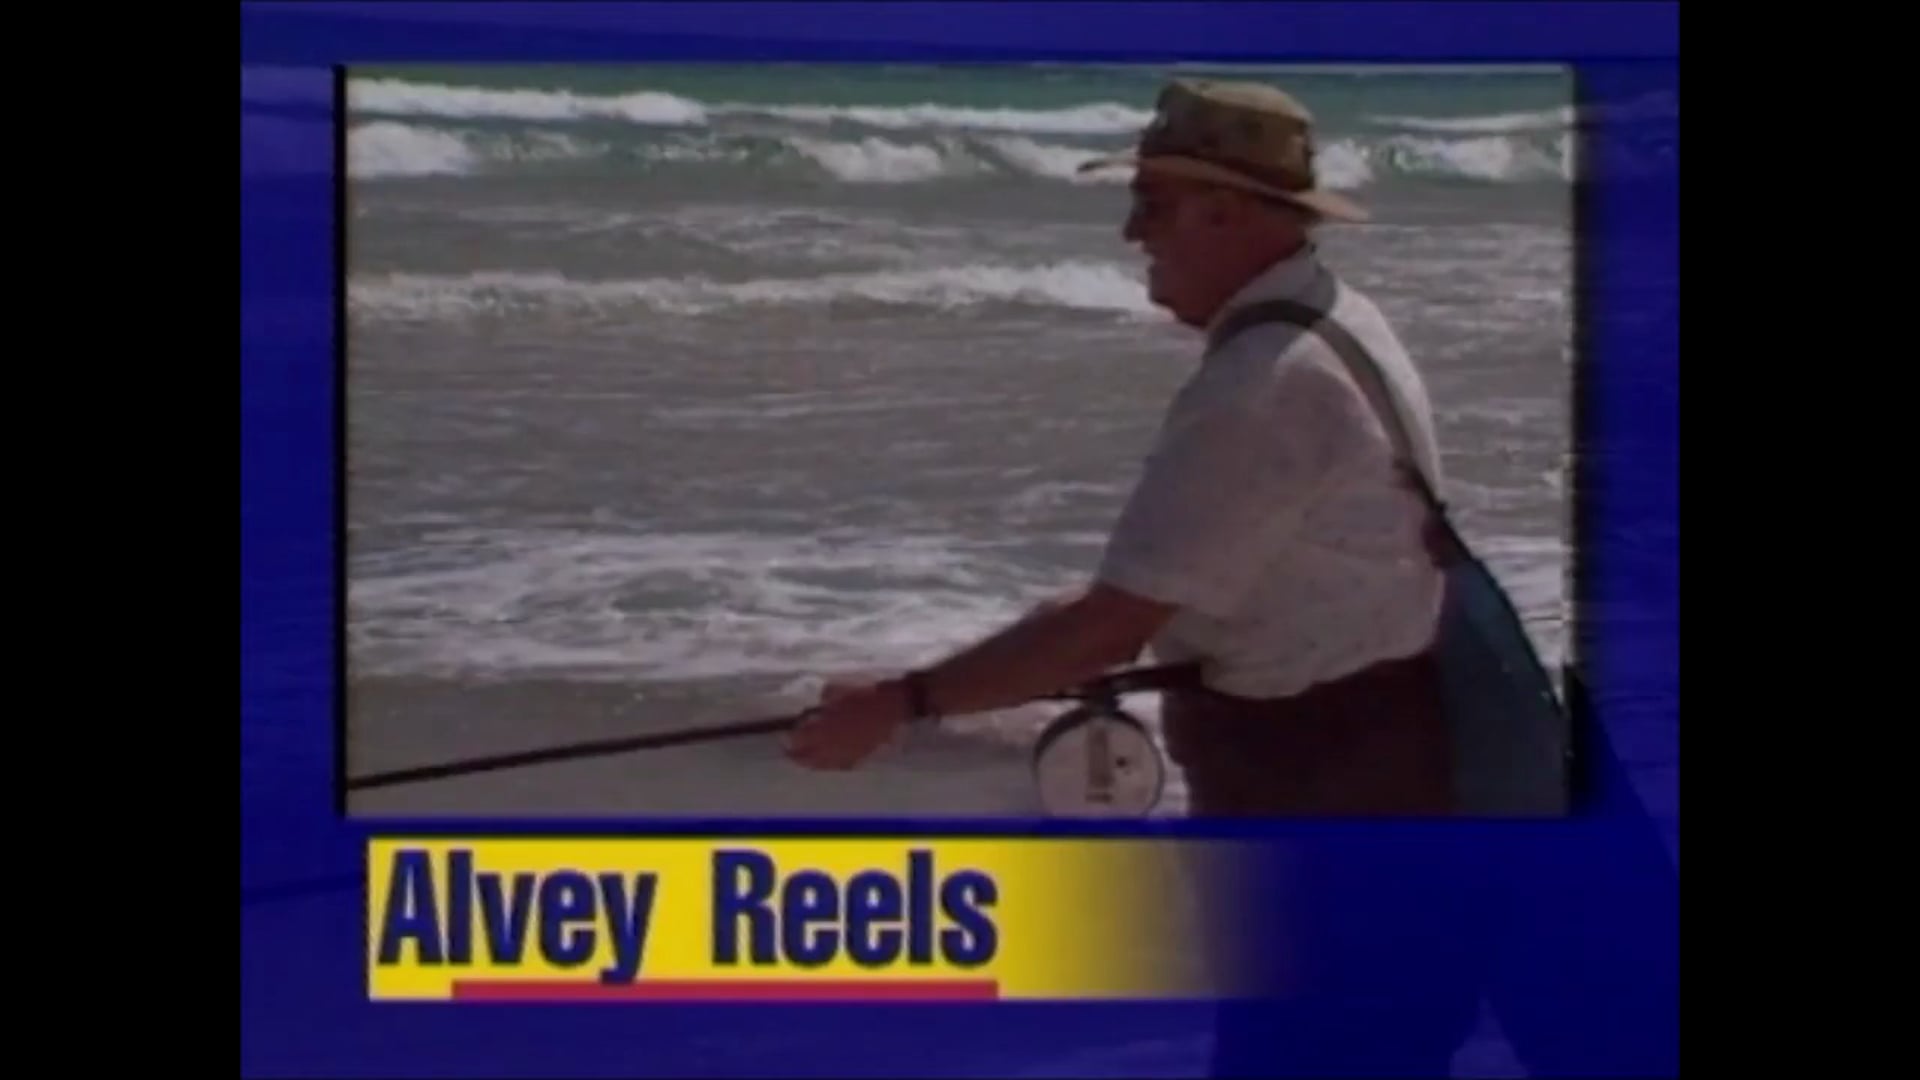 Alvey Reels – April 1995